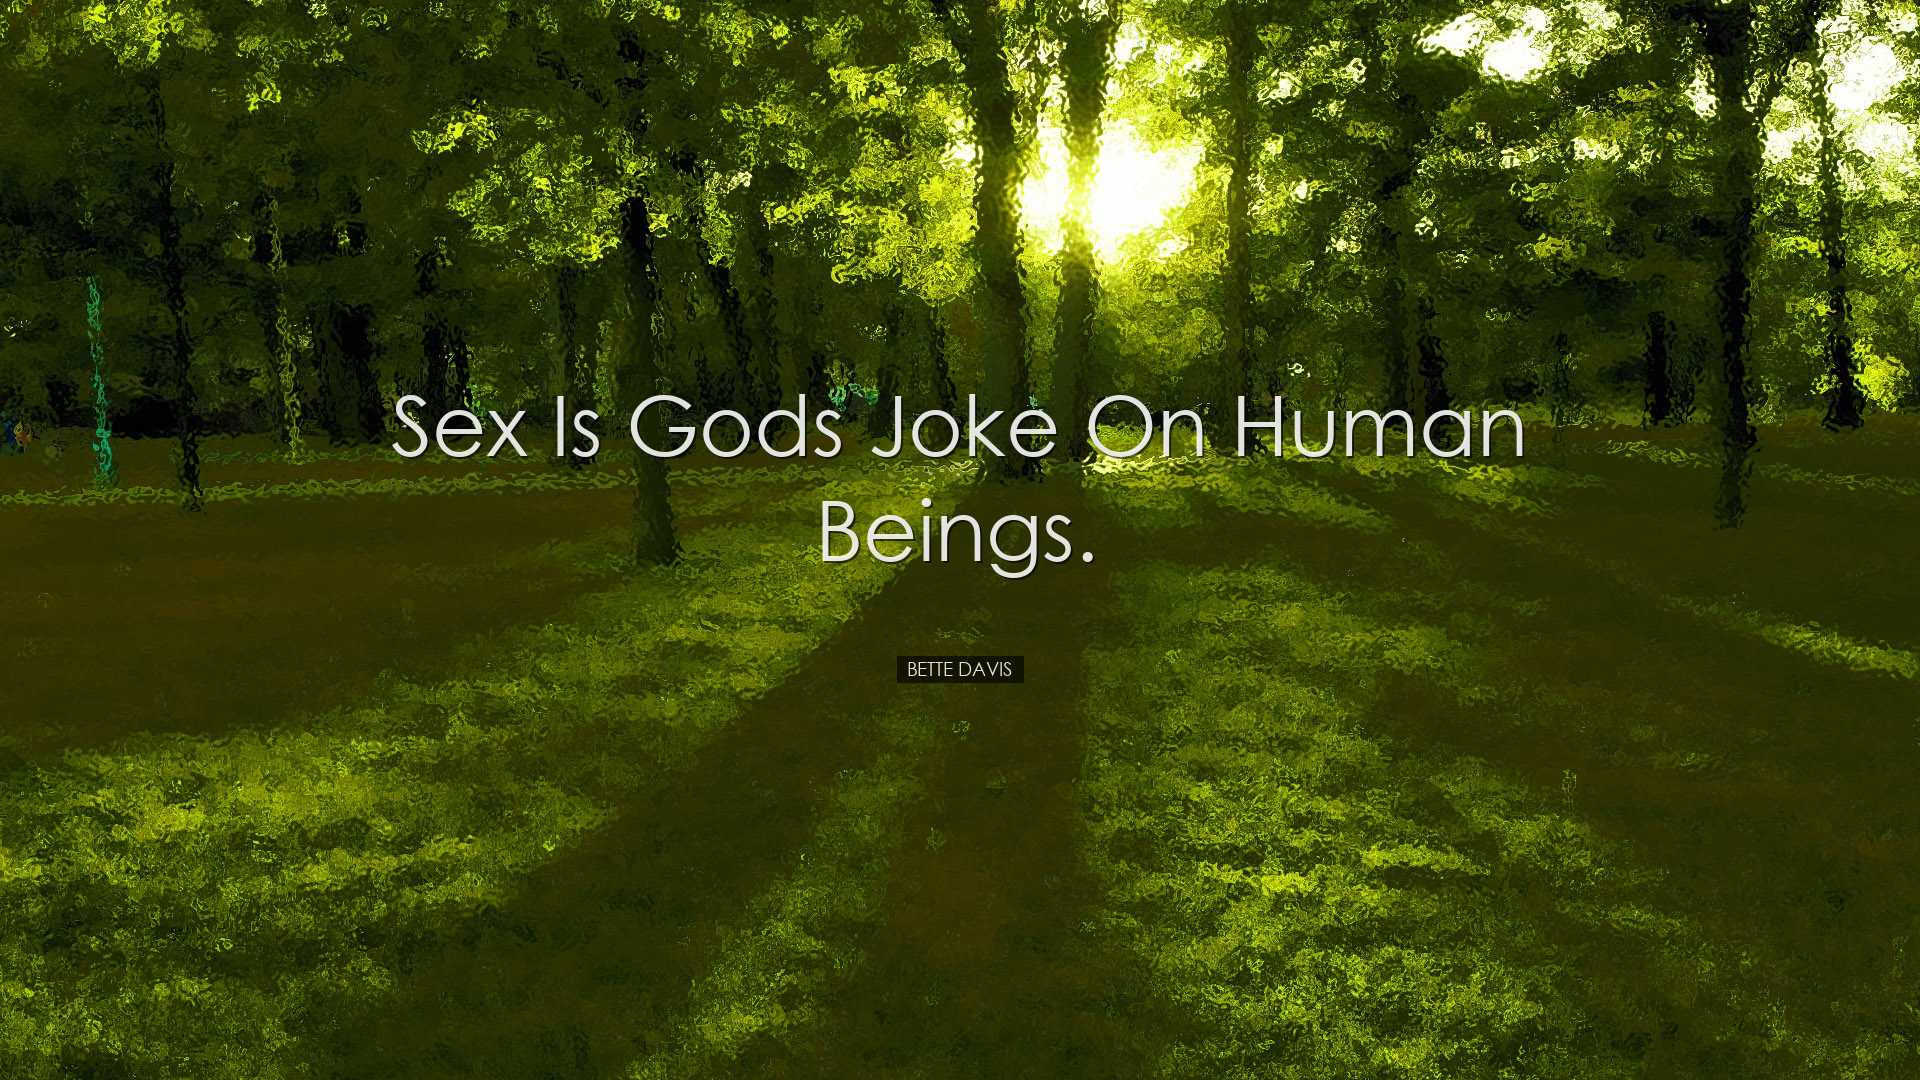 Sex is Gods joke on human beings. - Bette Davis